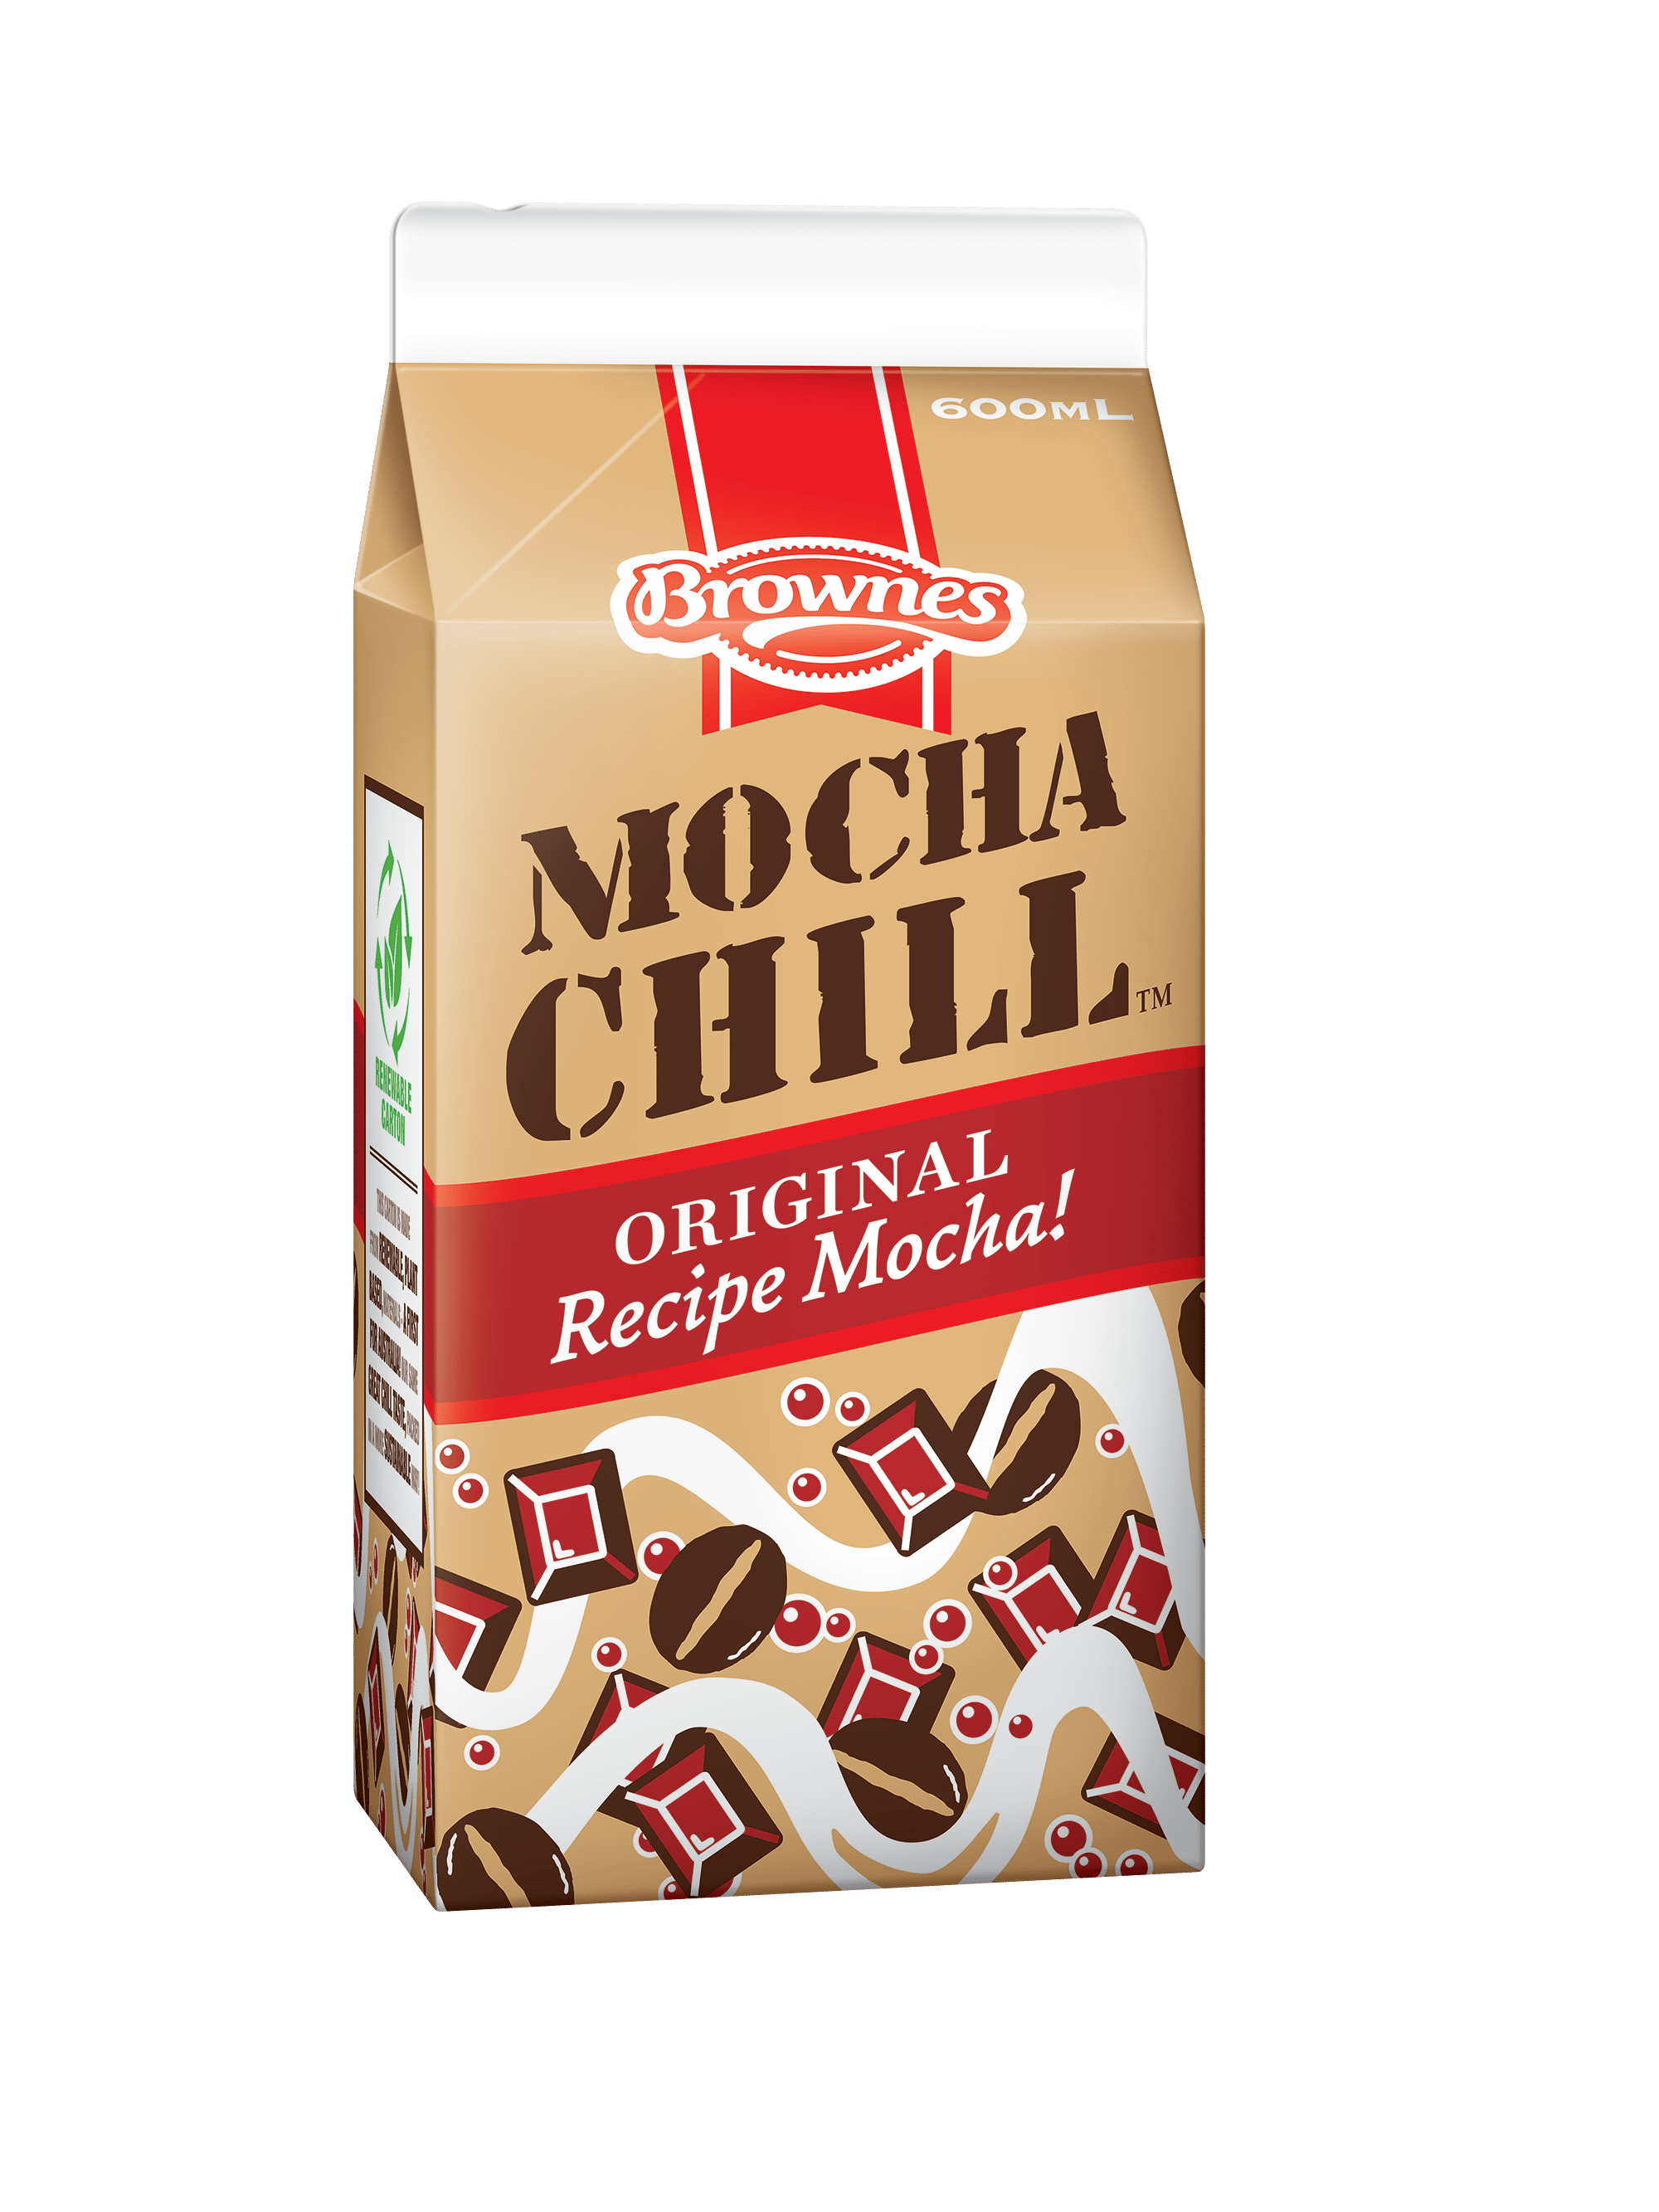 Original Recipe Mocha CHILL